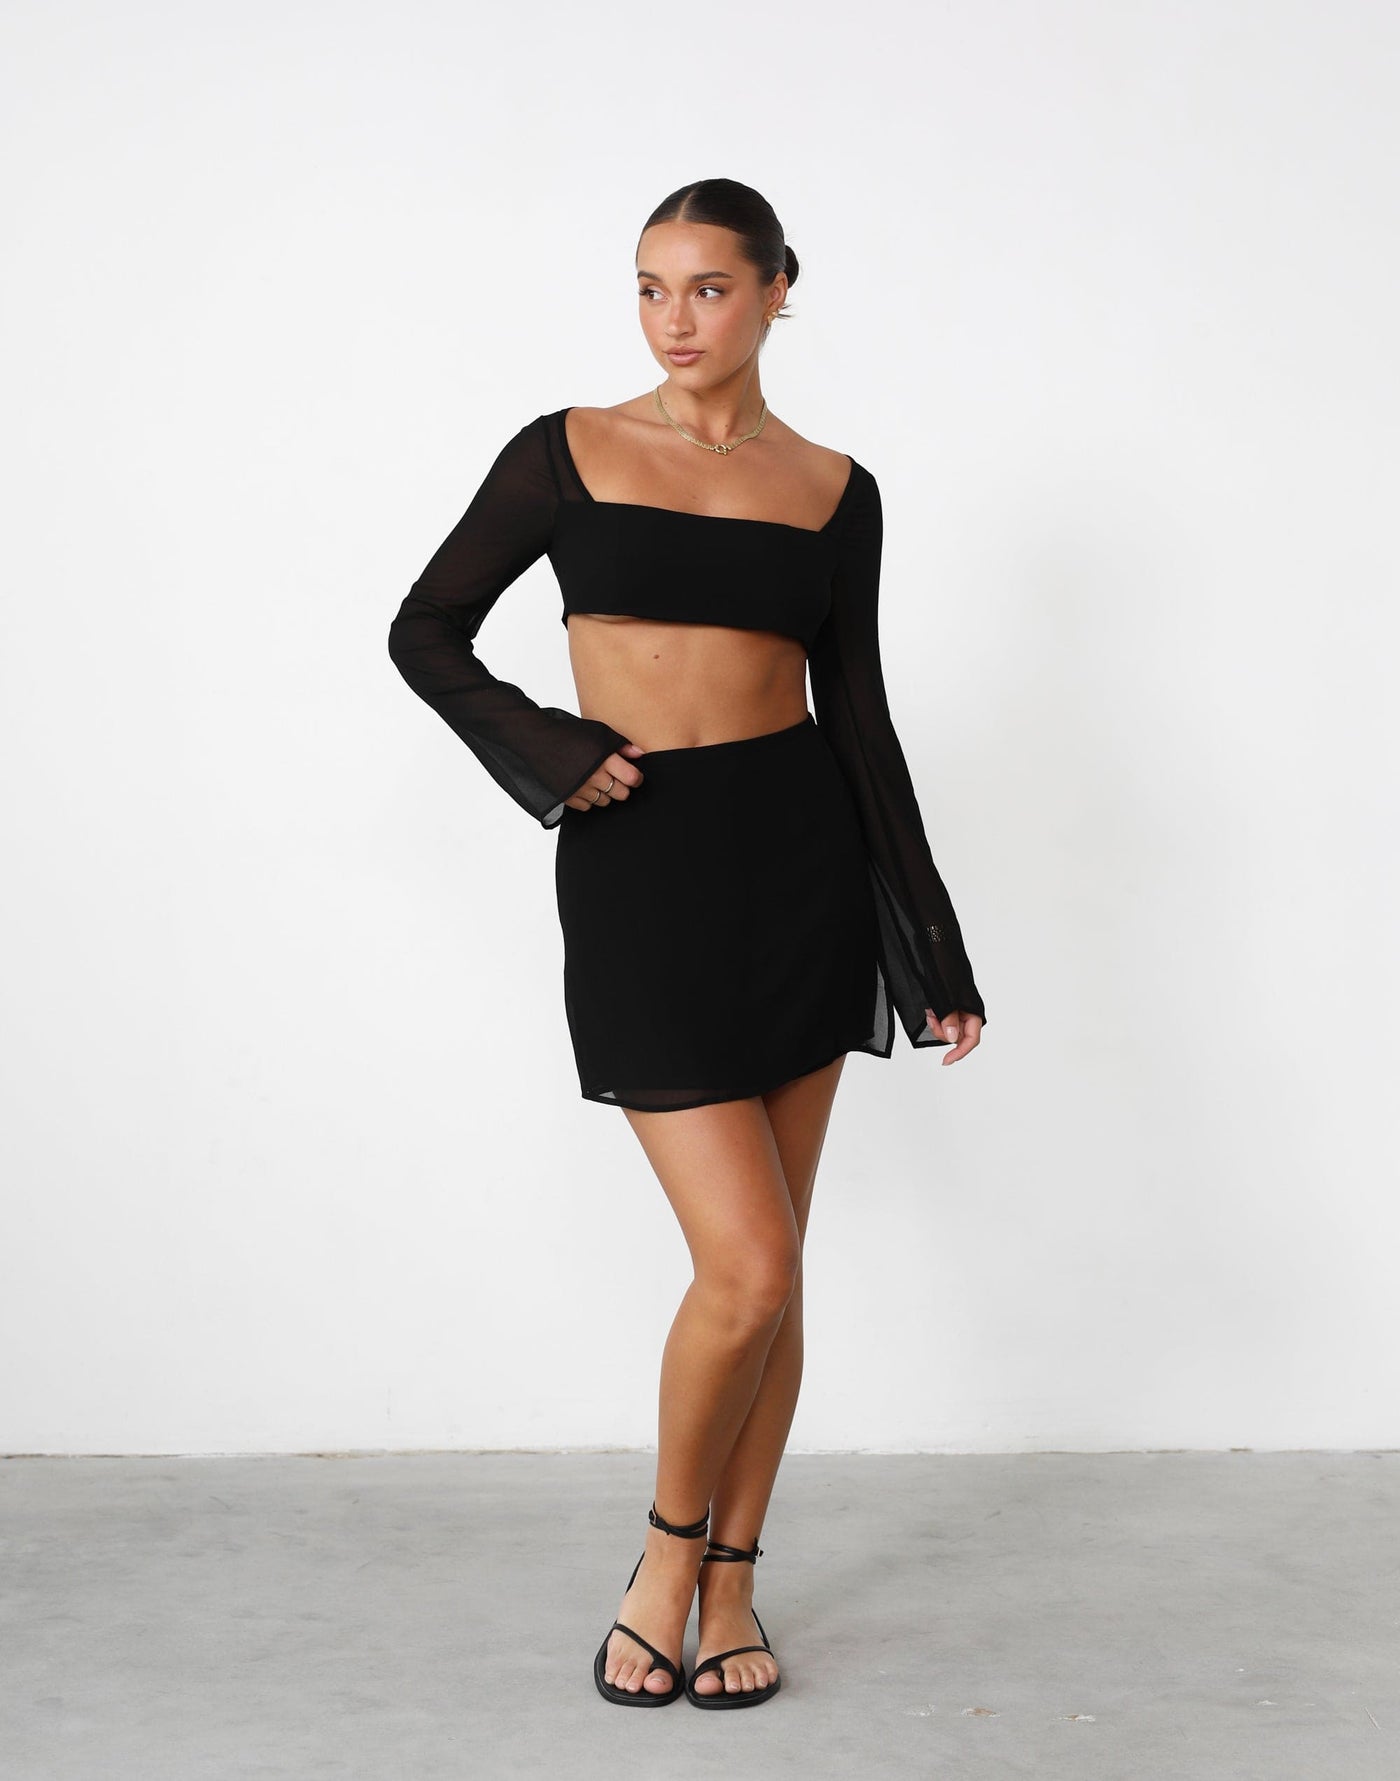 Abby Mini Skirt (Black) - Black High Waisted Mini Skirt - Women's Skirt - Charcoal Clothing